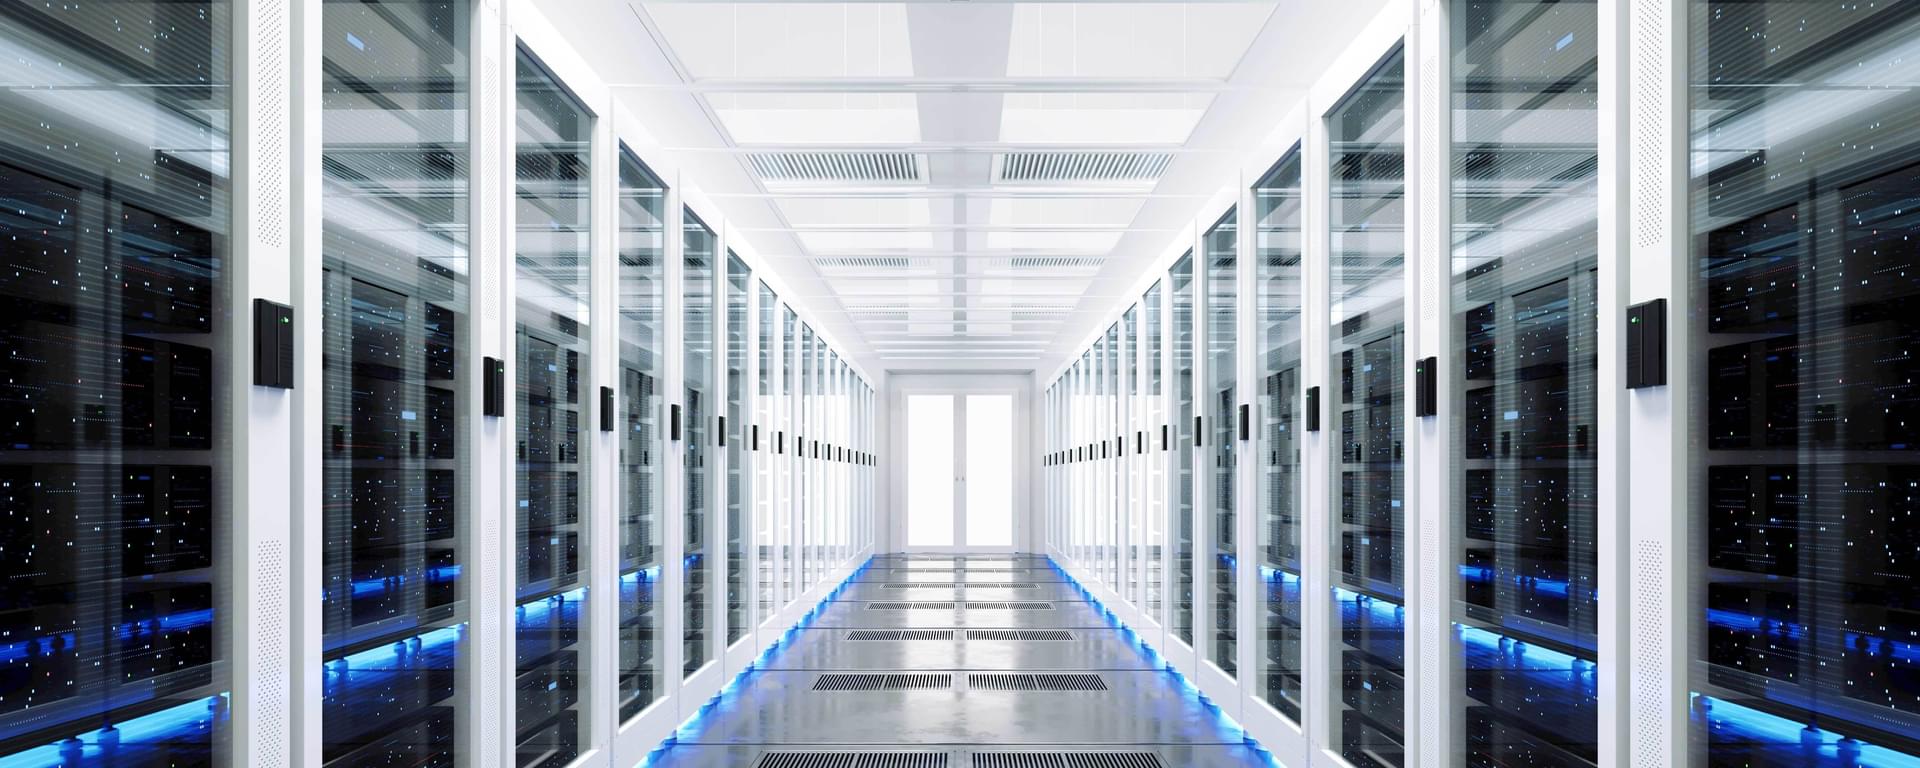 3D rendering of data server rack